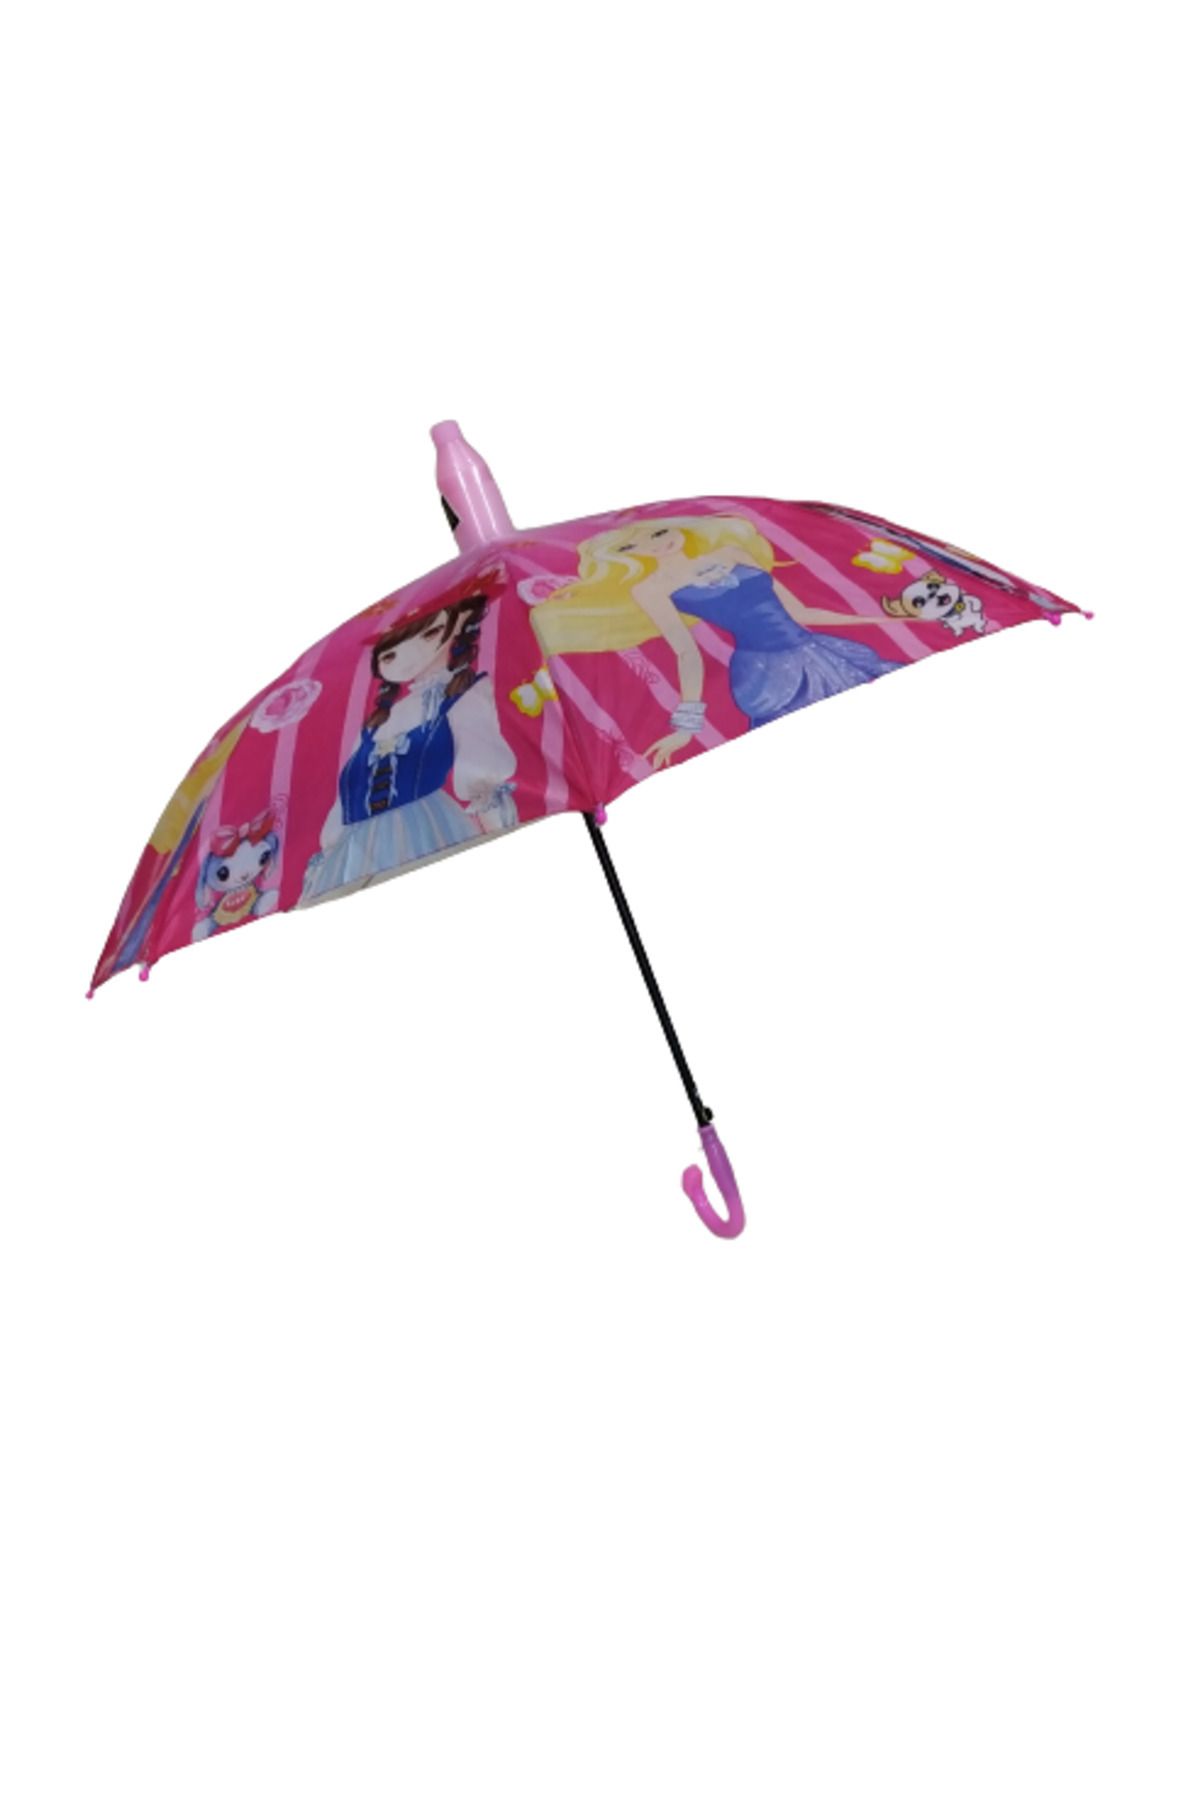 TREND Bardaklı düdüklü Figürlü Kız Çocuk şemsiye 8 Telli